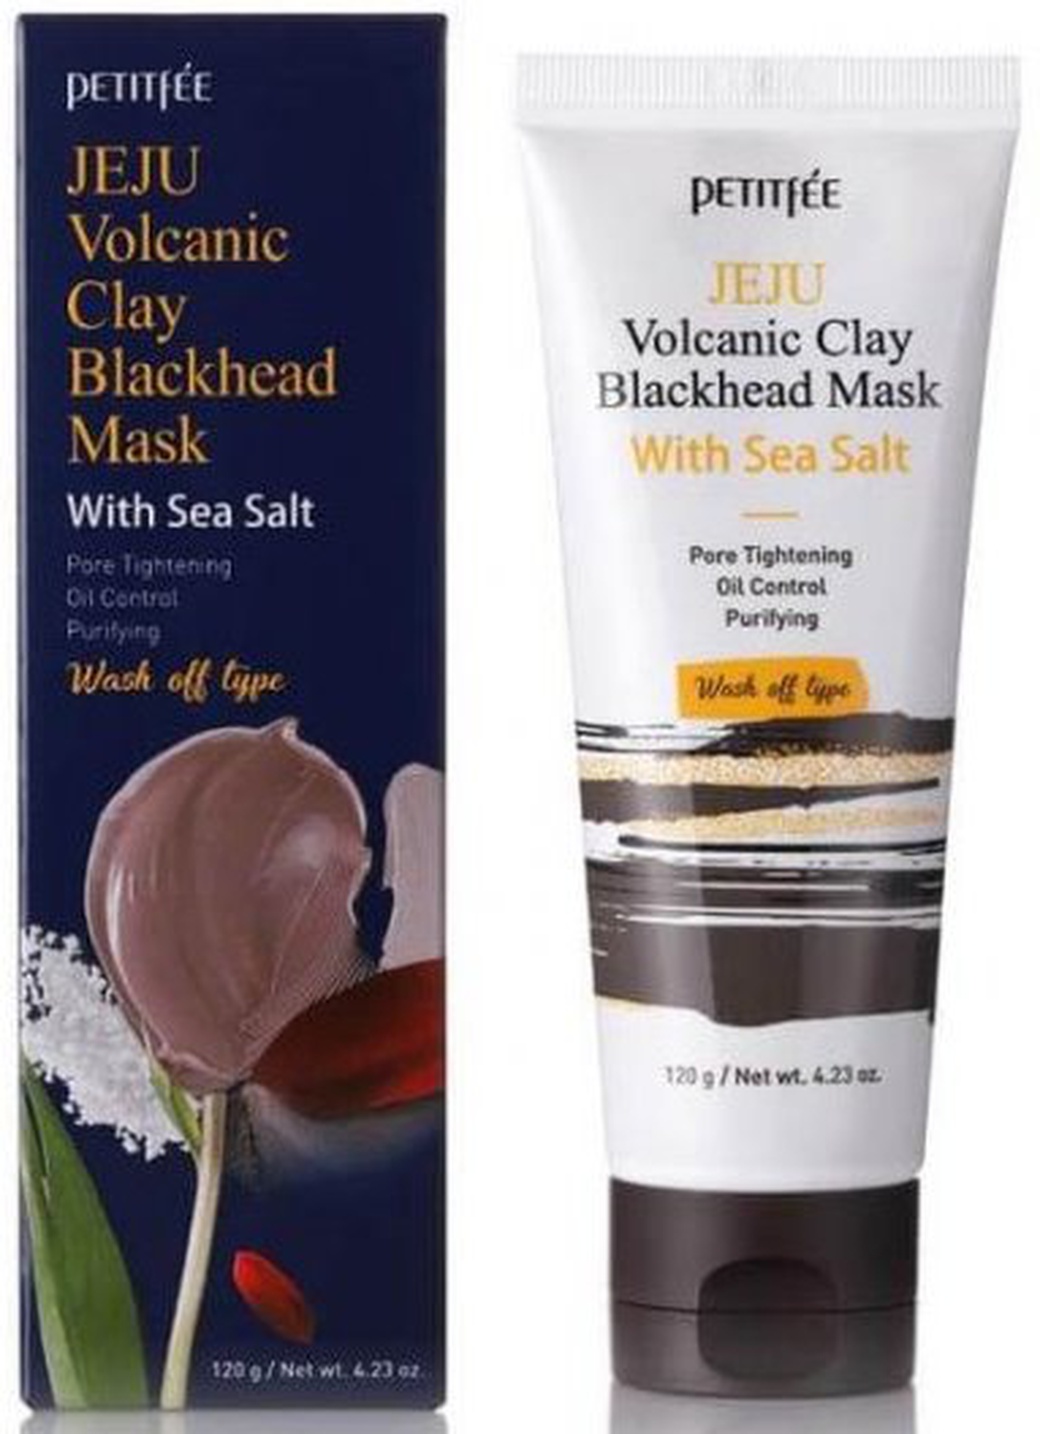 Petitfee Очищающая маска с вулканическим пеплом и морской солью Jeju Volcanic Clay Blackhead Mask фото